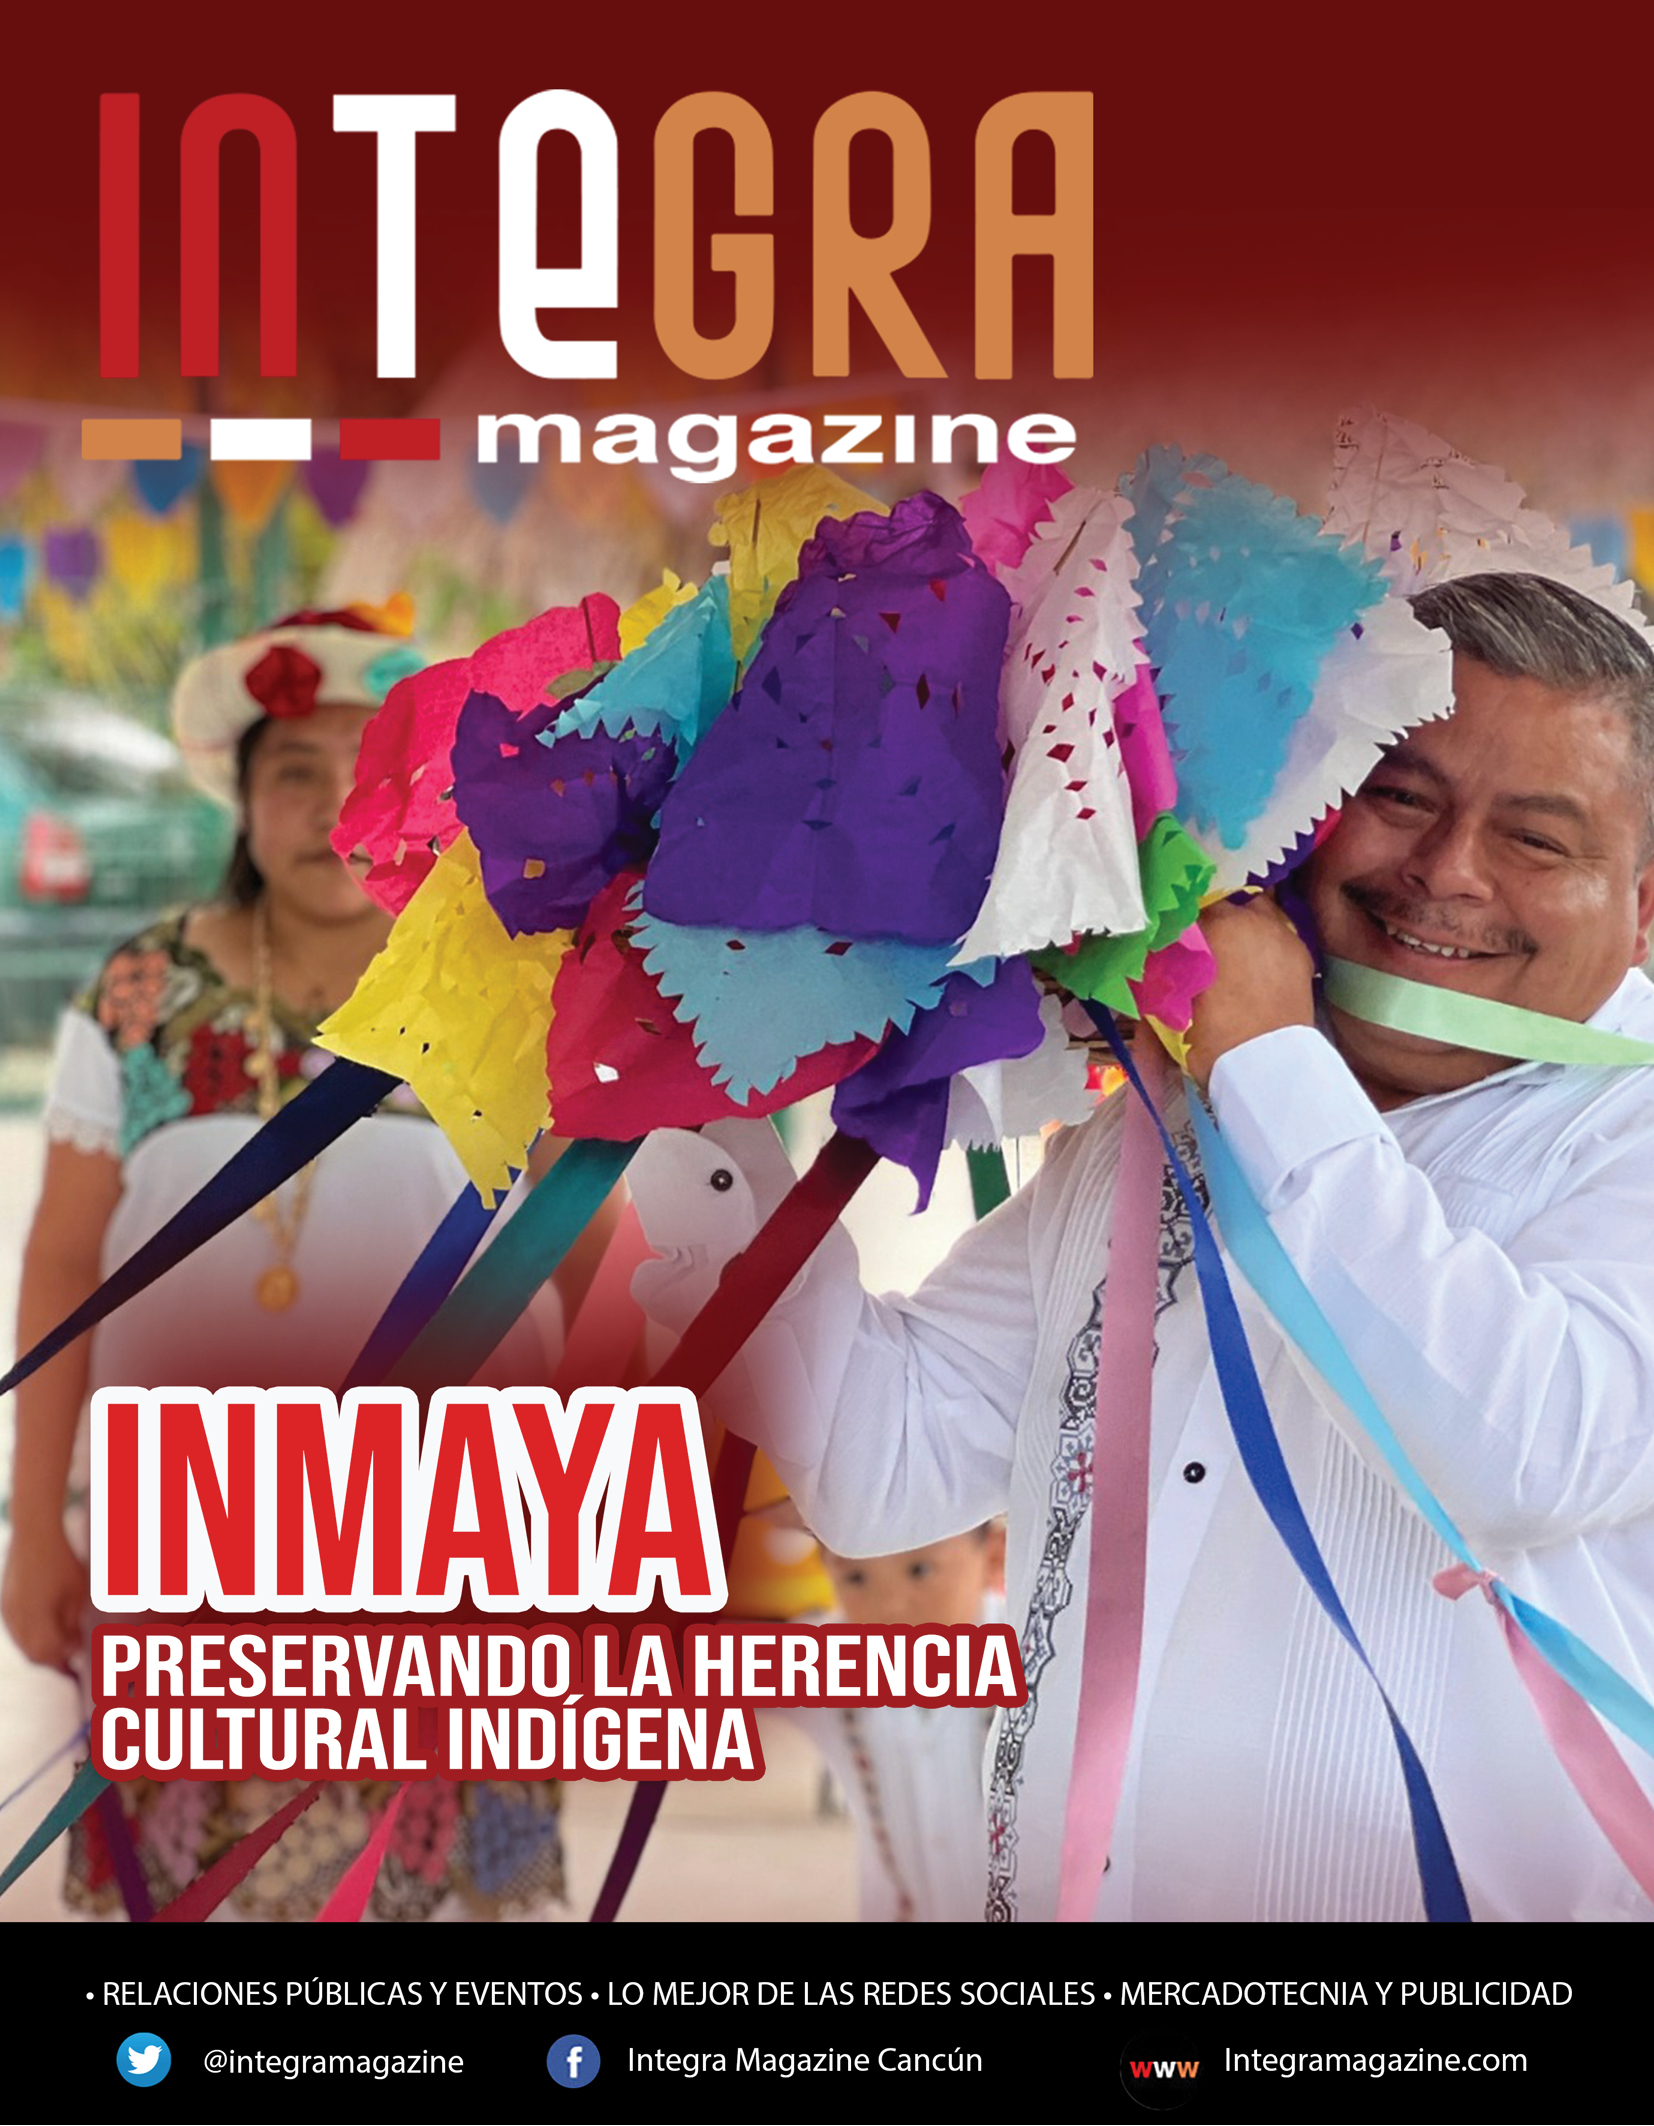 INMAYA, preservando la herencia cultural indígena